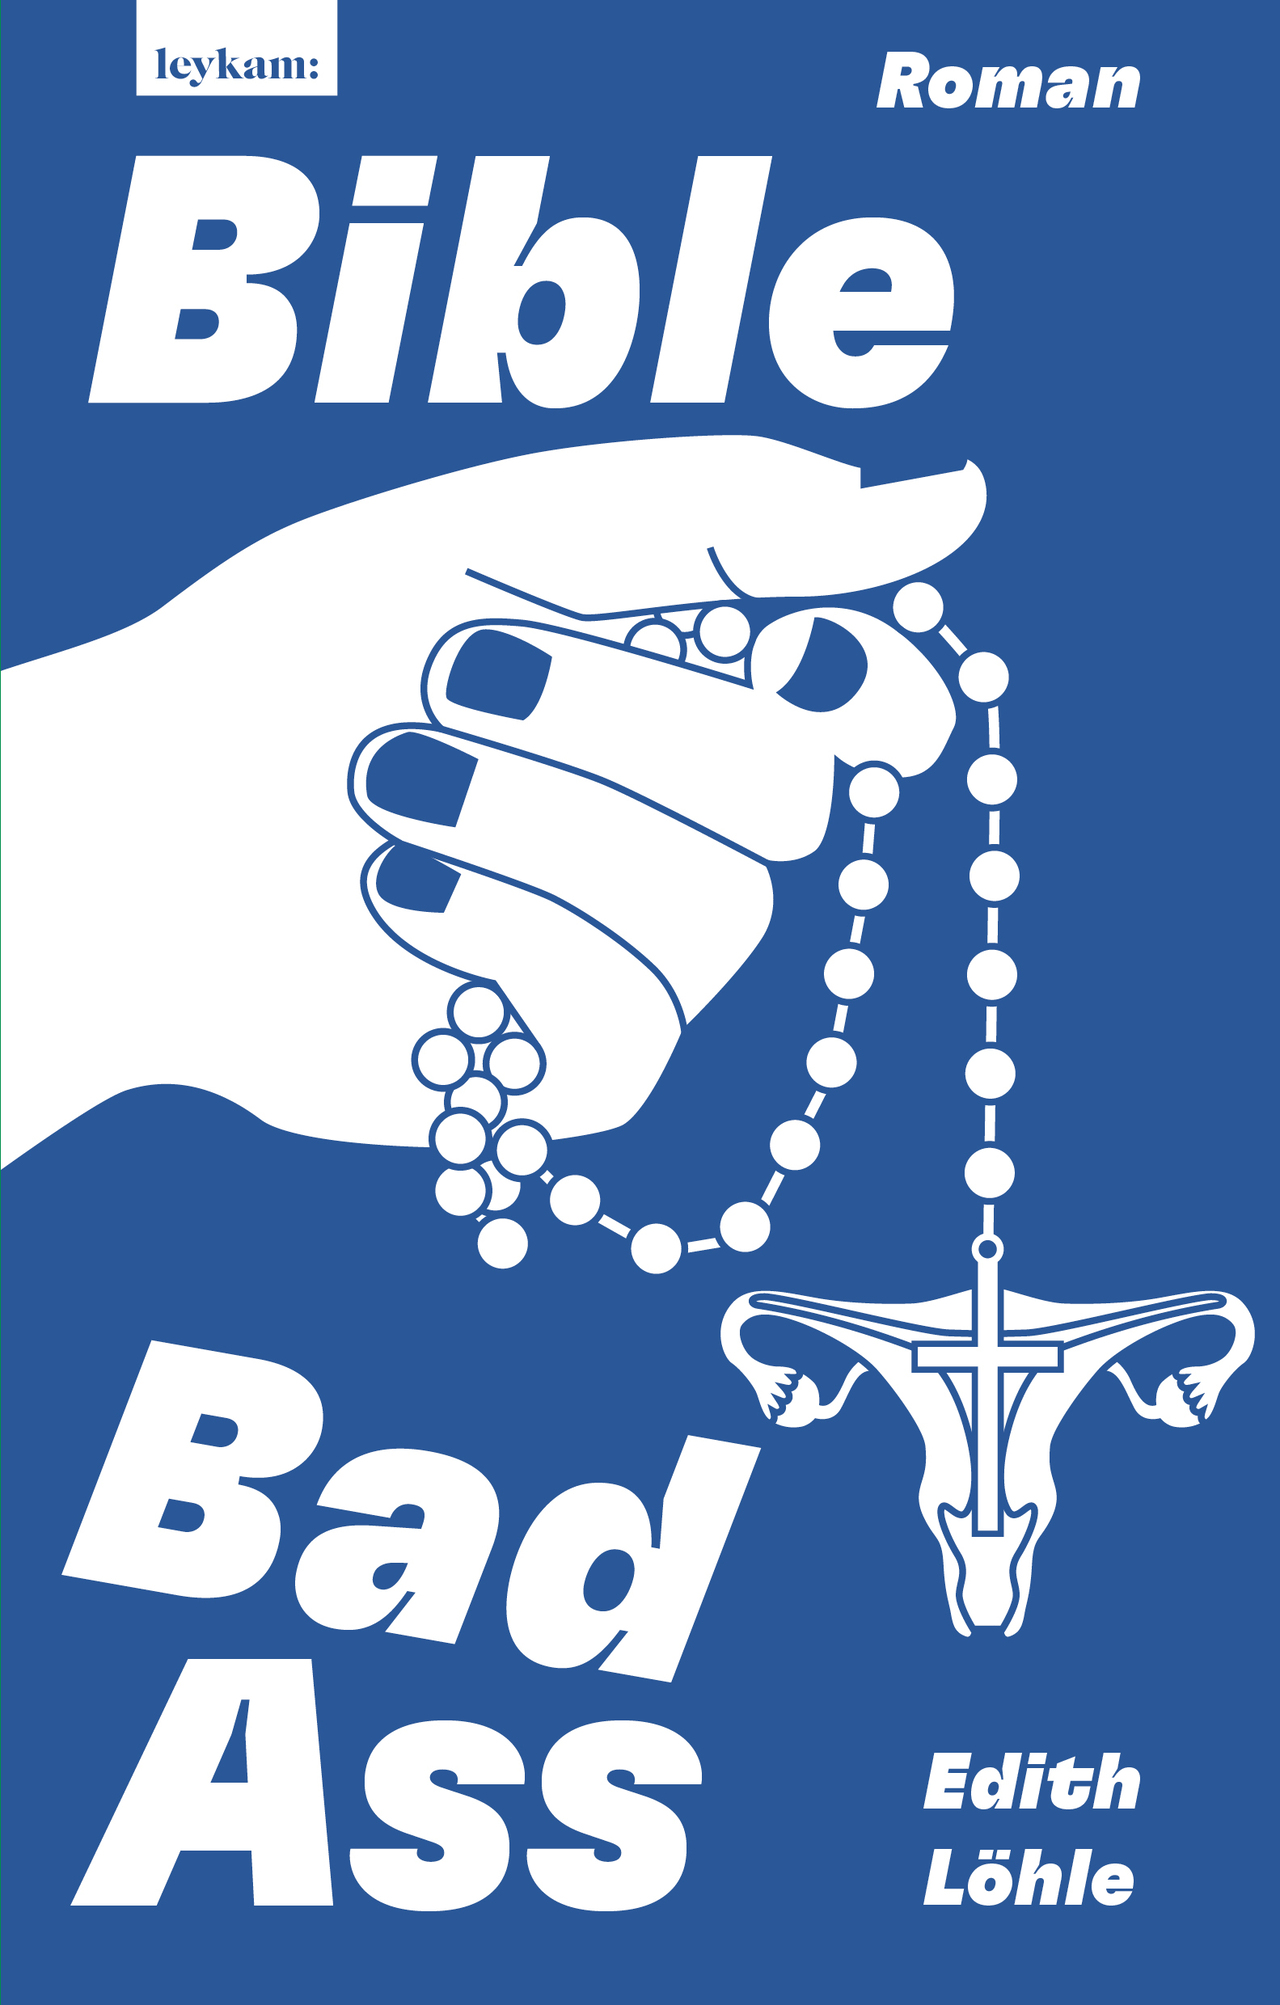 Buchcover "Bible Bad Ass"